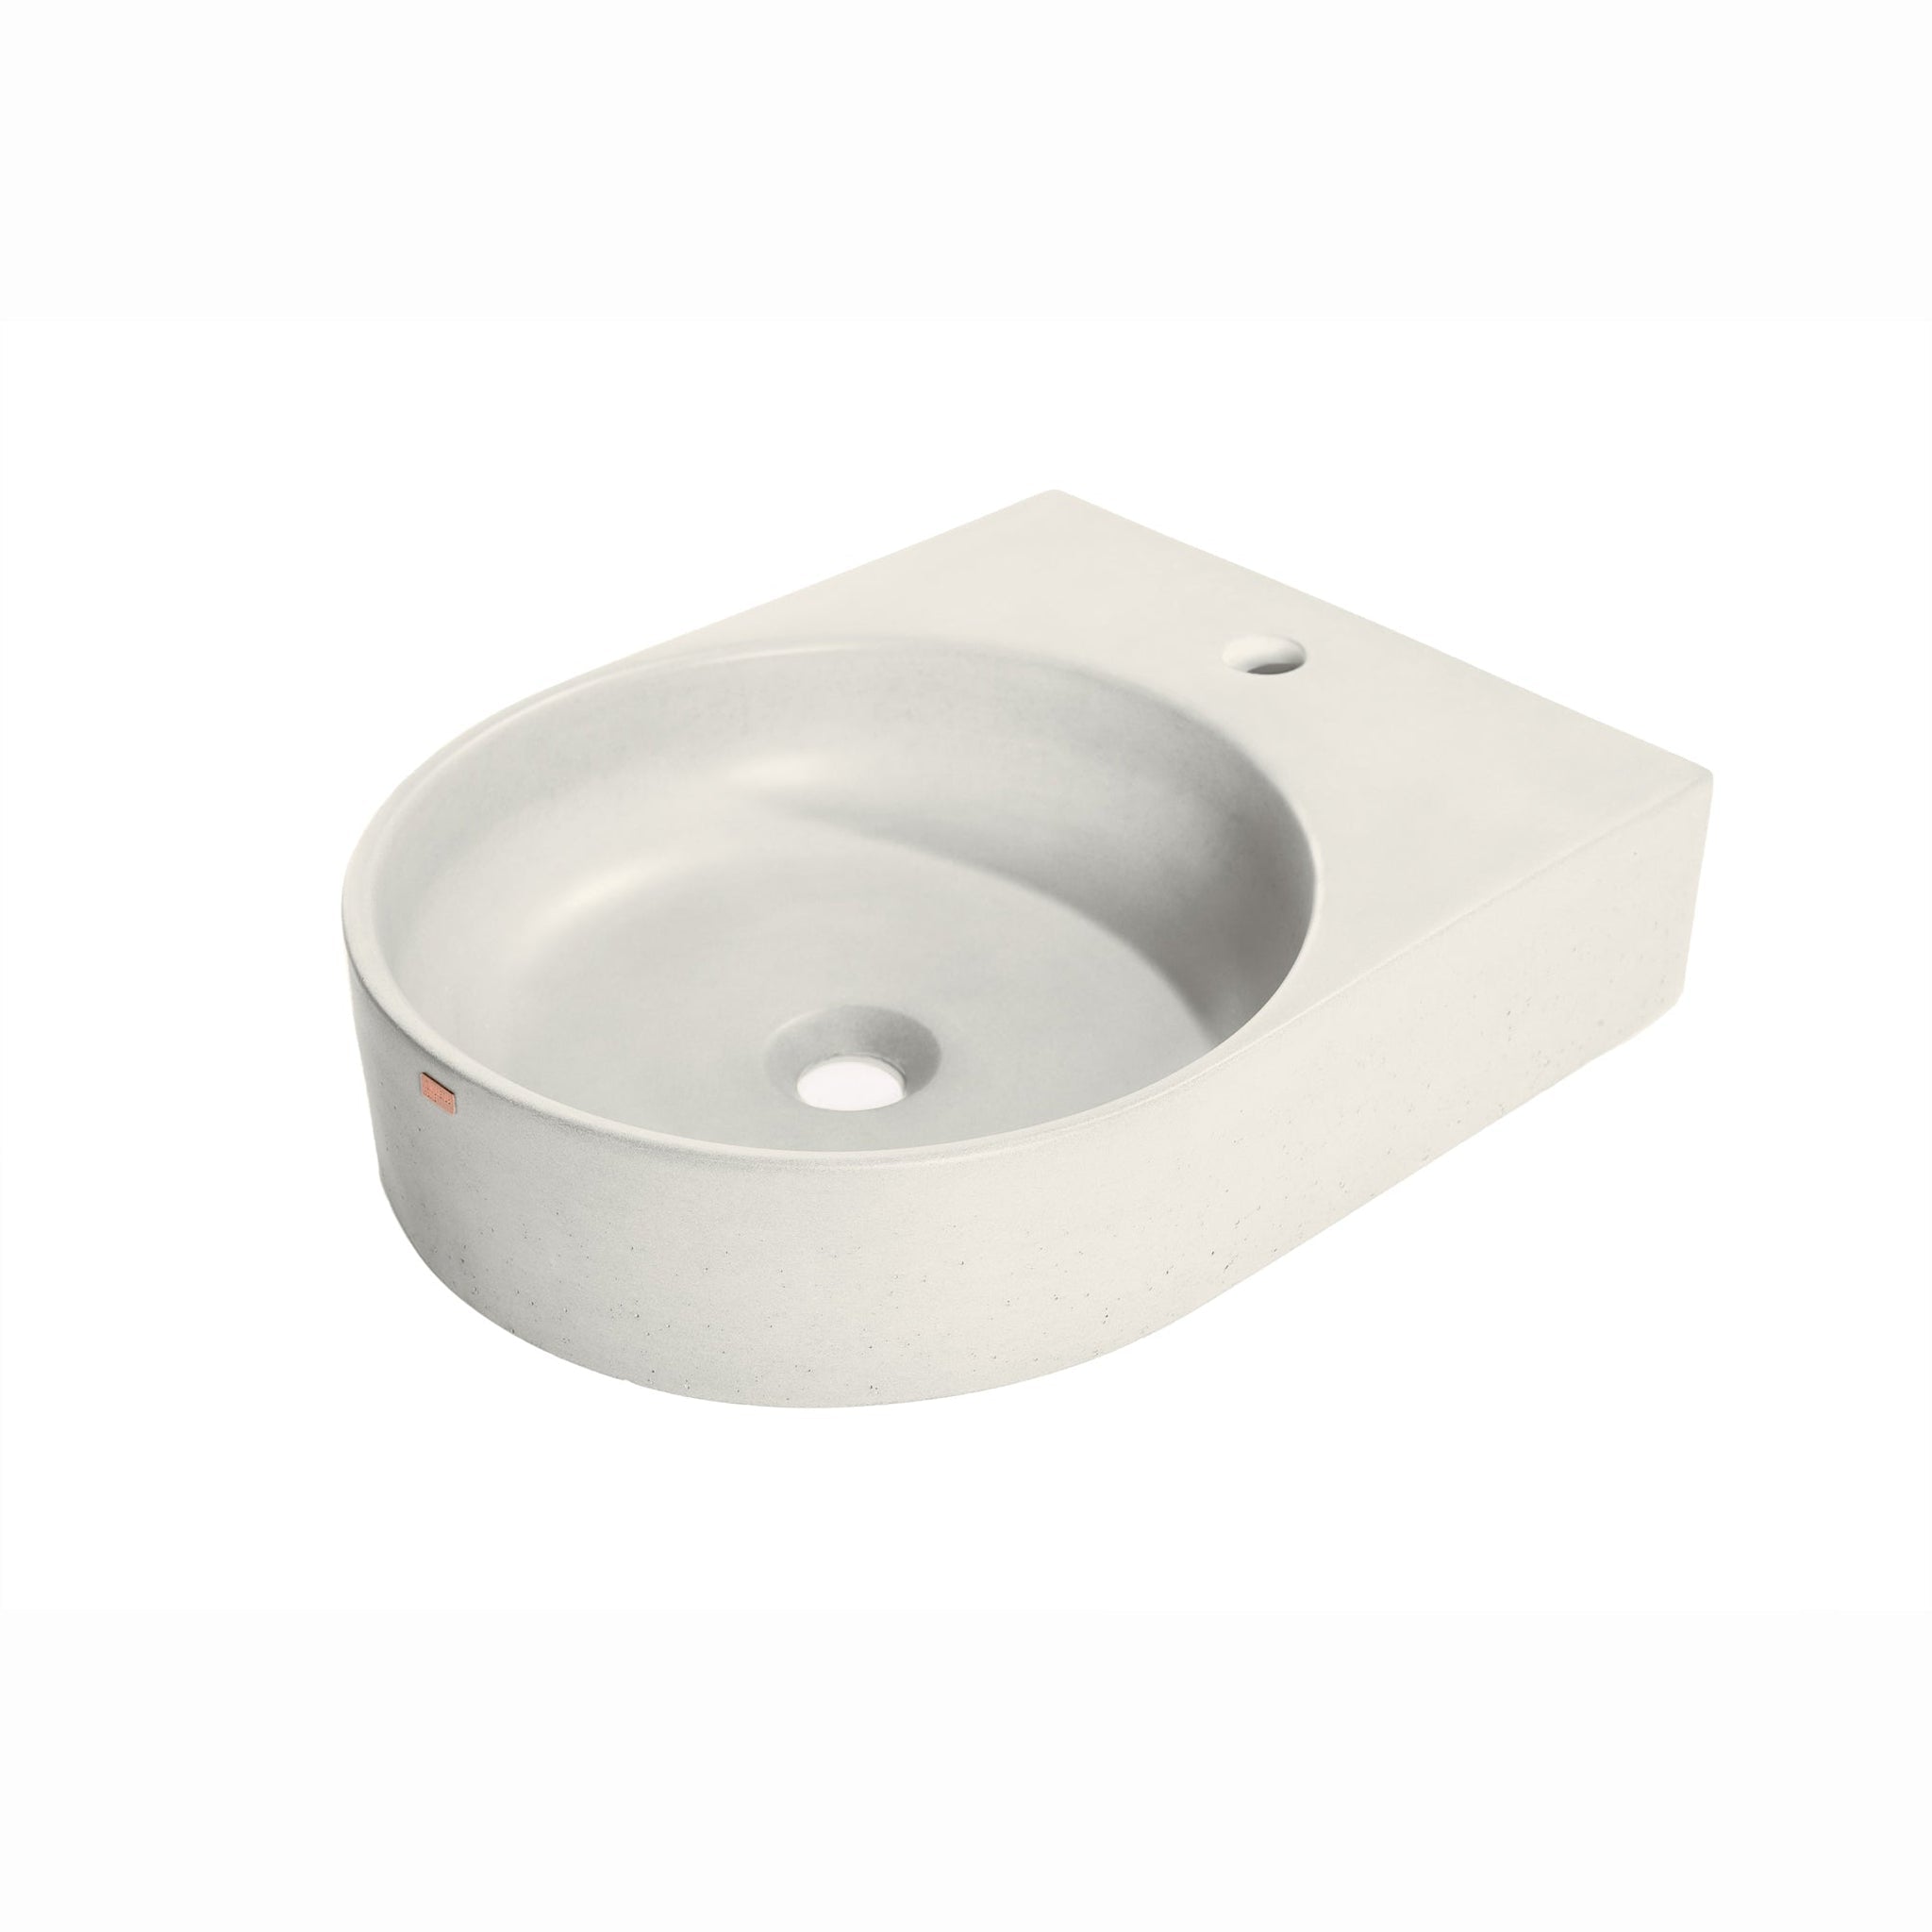 Konkretus, Konkretus Bahia01 15" Shadow Gray Wall-Mounted Round Vessel Concrete Bathroom Sink